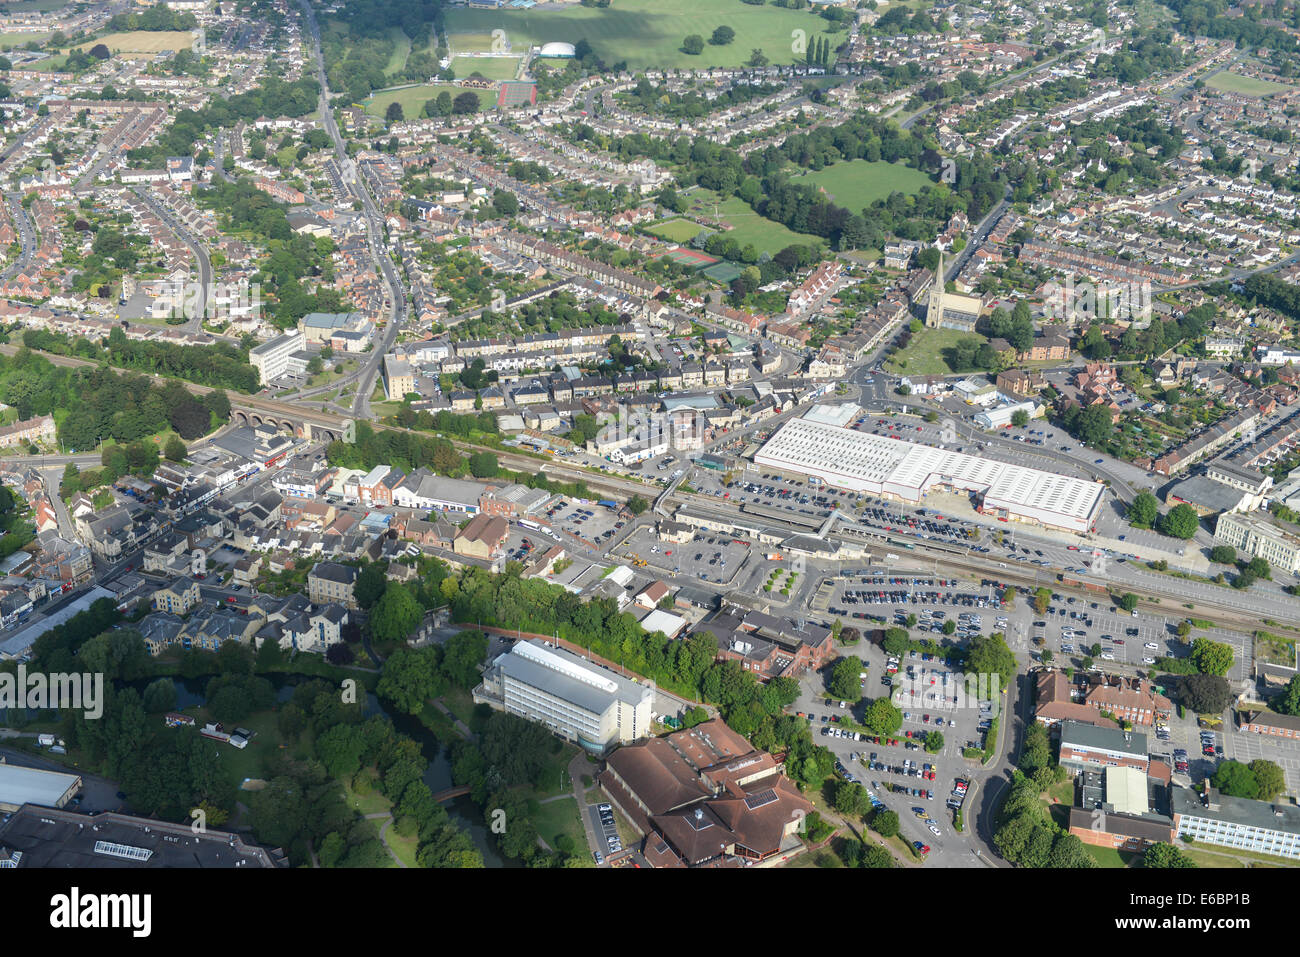 Une vue aérienne de Chippenham dans le Wiltshire, UK, montrant la zone autour de la gare et du centre-ville. Banque D'Images